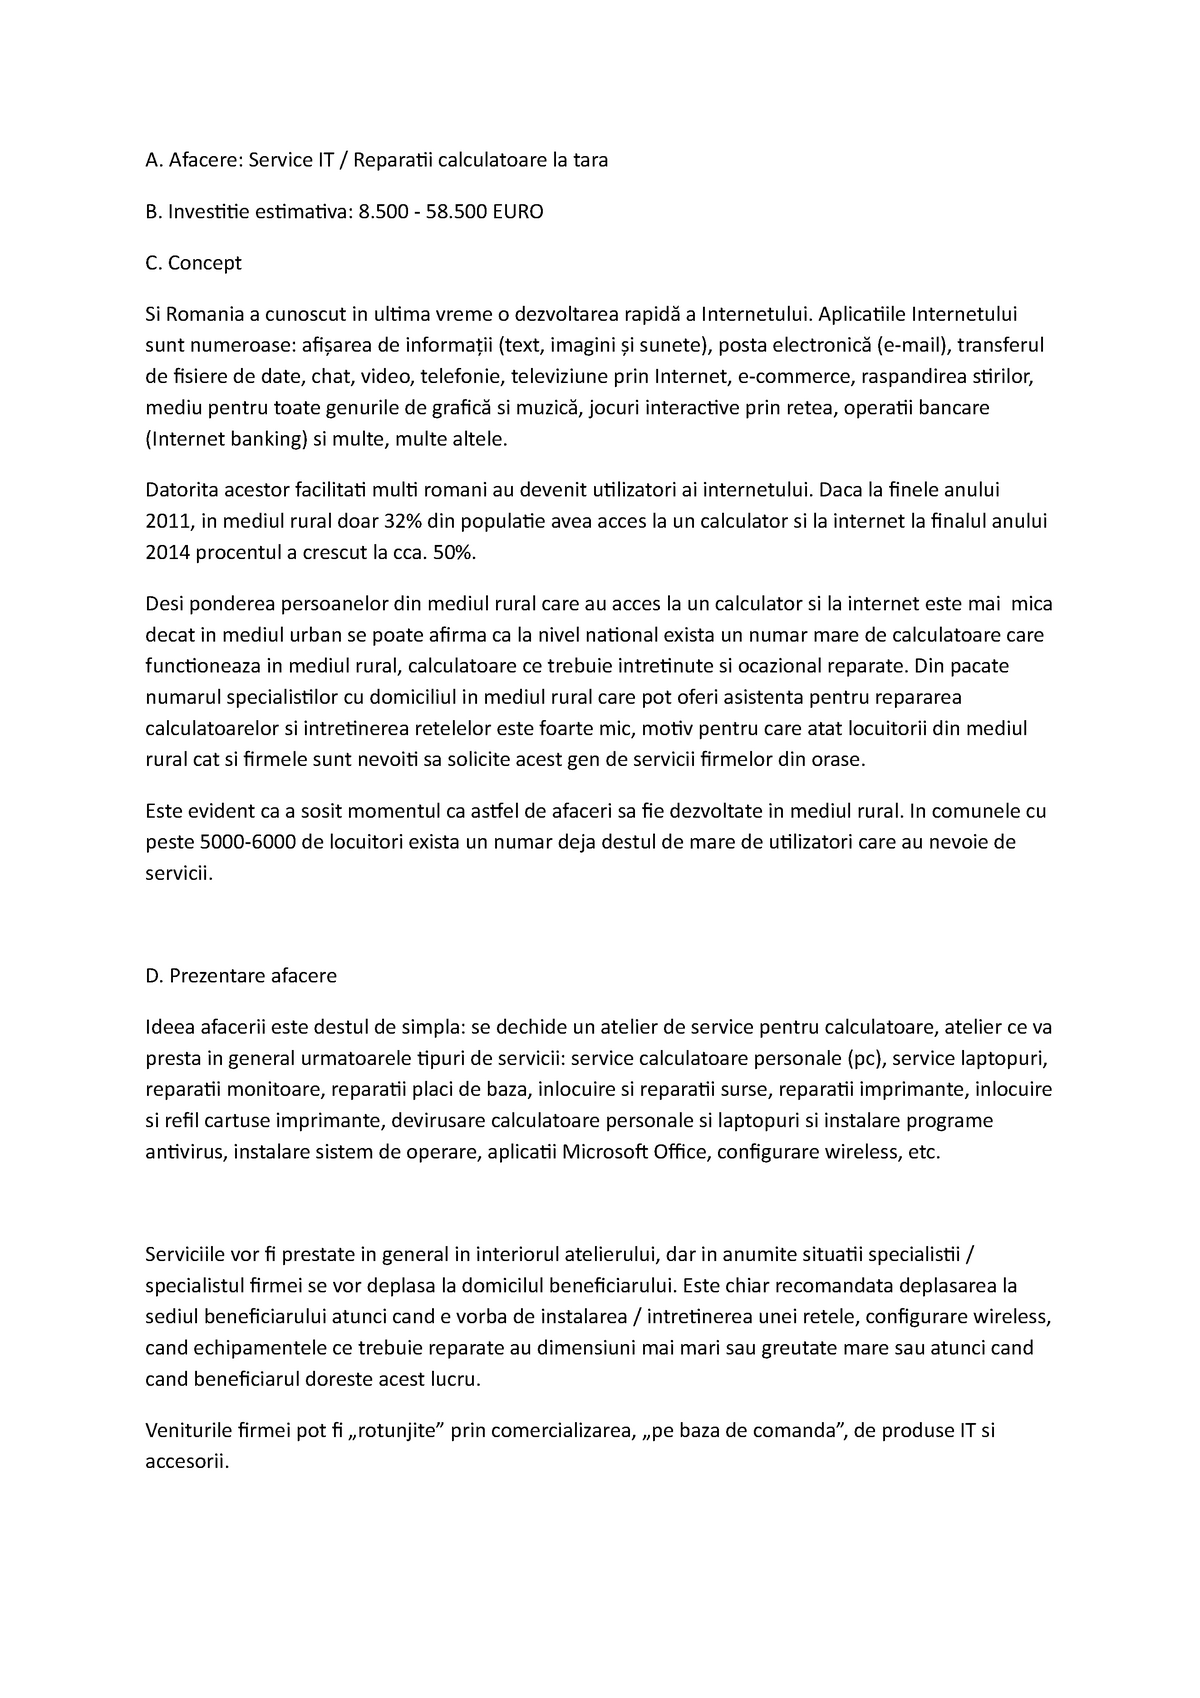 Recommendation Dot Promote Plan de afaceri - Nui - A. Afacere: Service IT / Reparatii calculatoare la  tara B. Investitie - StuDocu